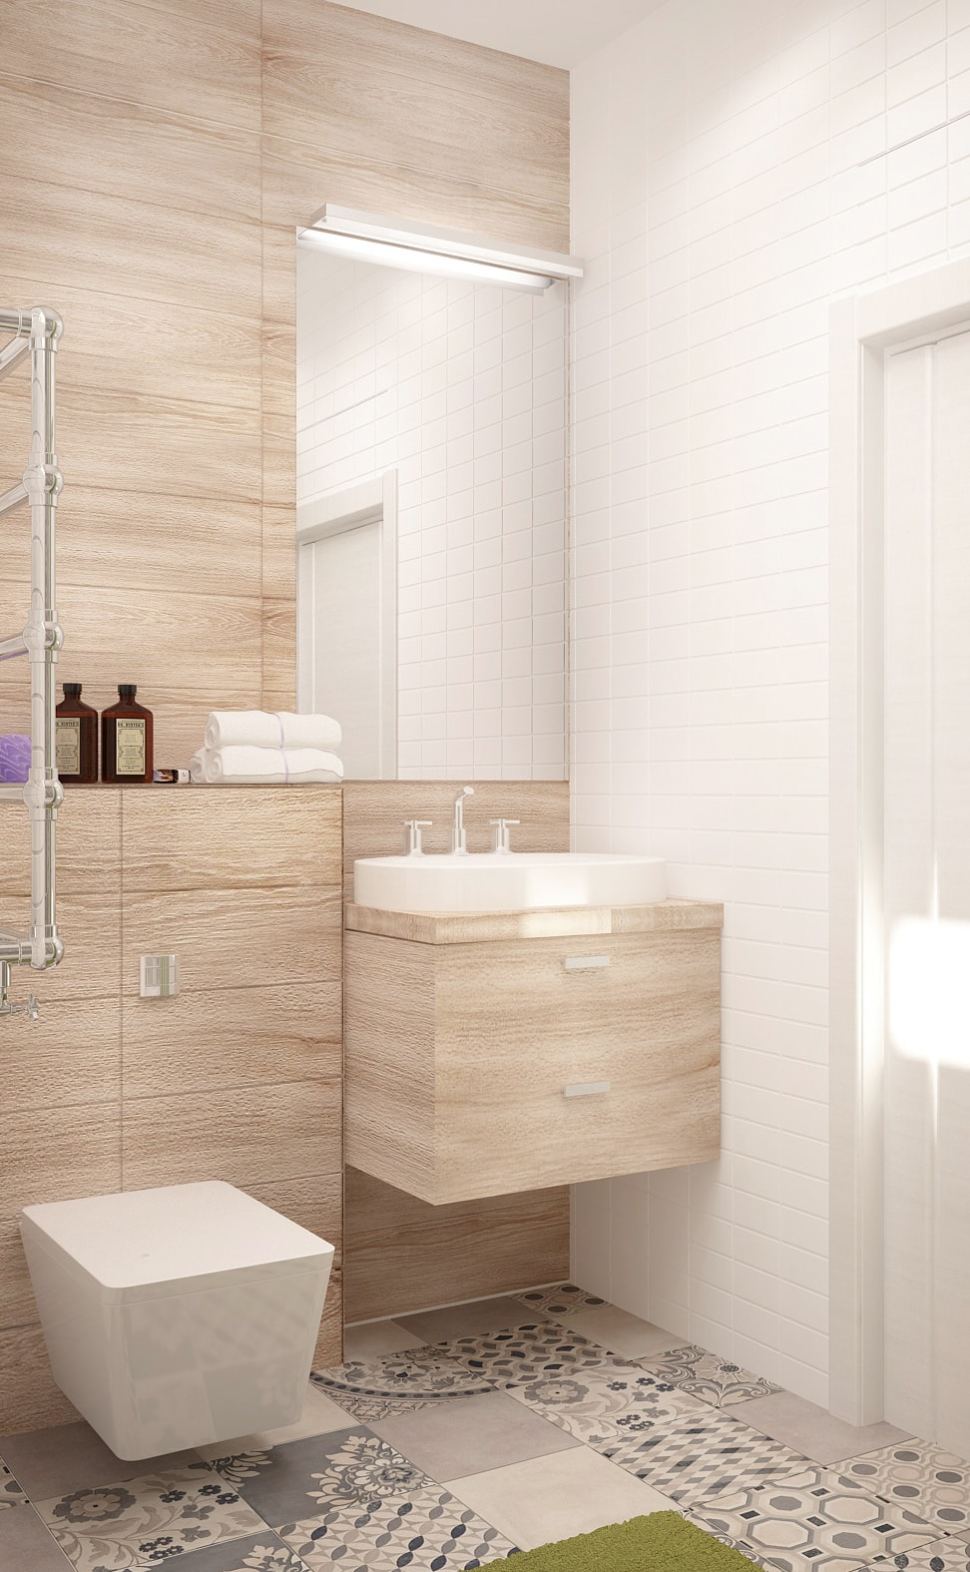 Визуализация совмещённого санузла с ванной комнатой 5 кв.м с бежевыми оттенками, бежевая тумба, раковина, ванная, душ, геометрическая плитка